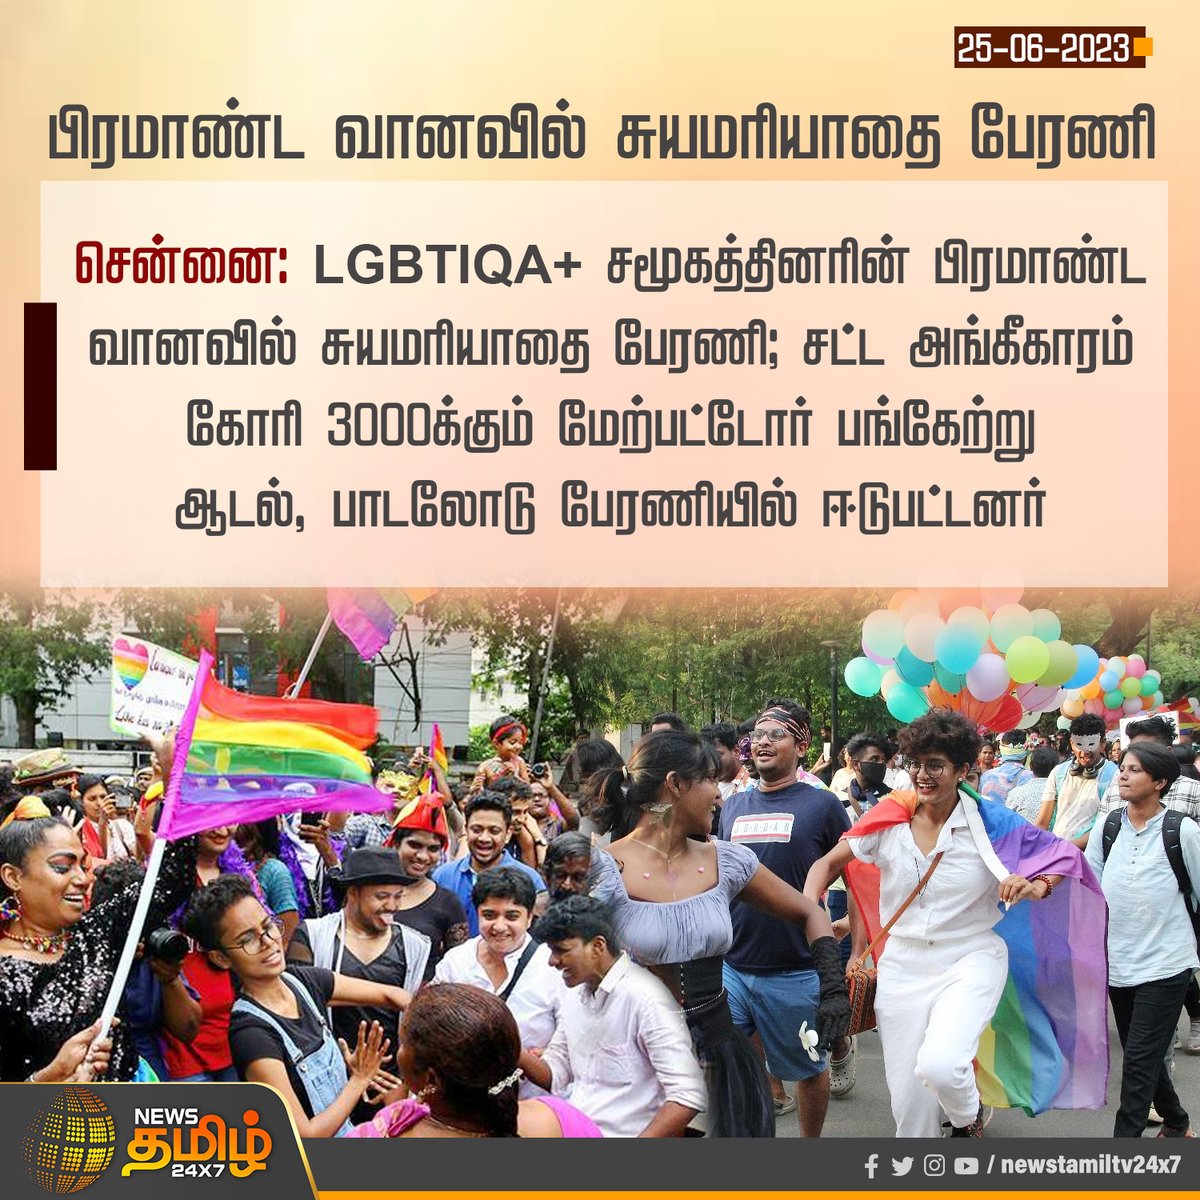 பிரமாண்ட வானவில் சுயமரியாதை பேரணி

#Chennai #LGBT #LGBTIQA #LGBTRally #RainbowRally #NewsTamil24x7